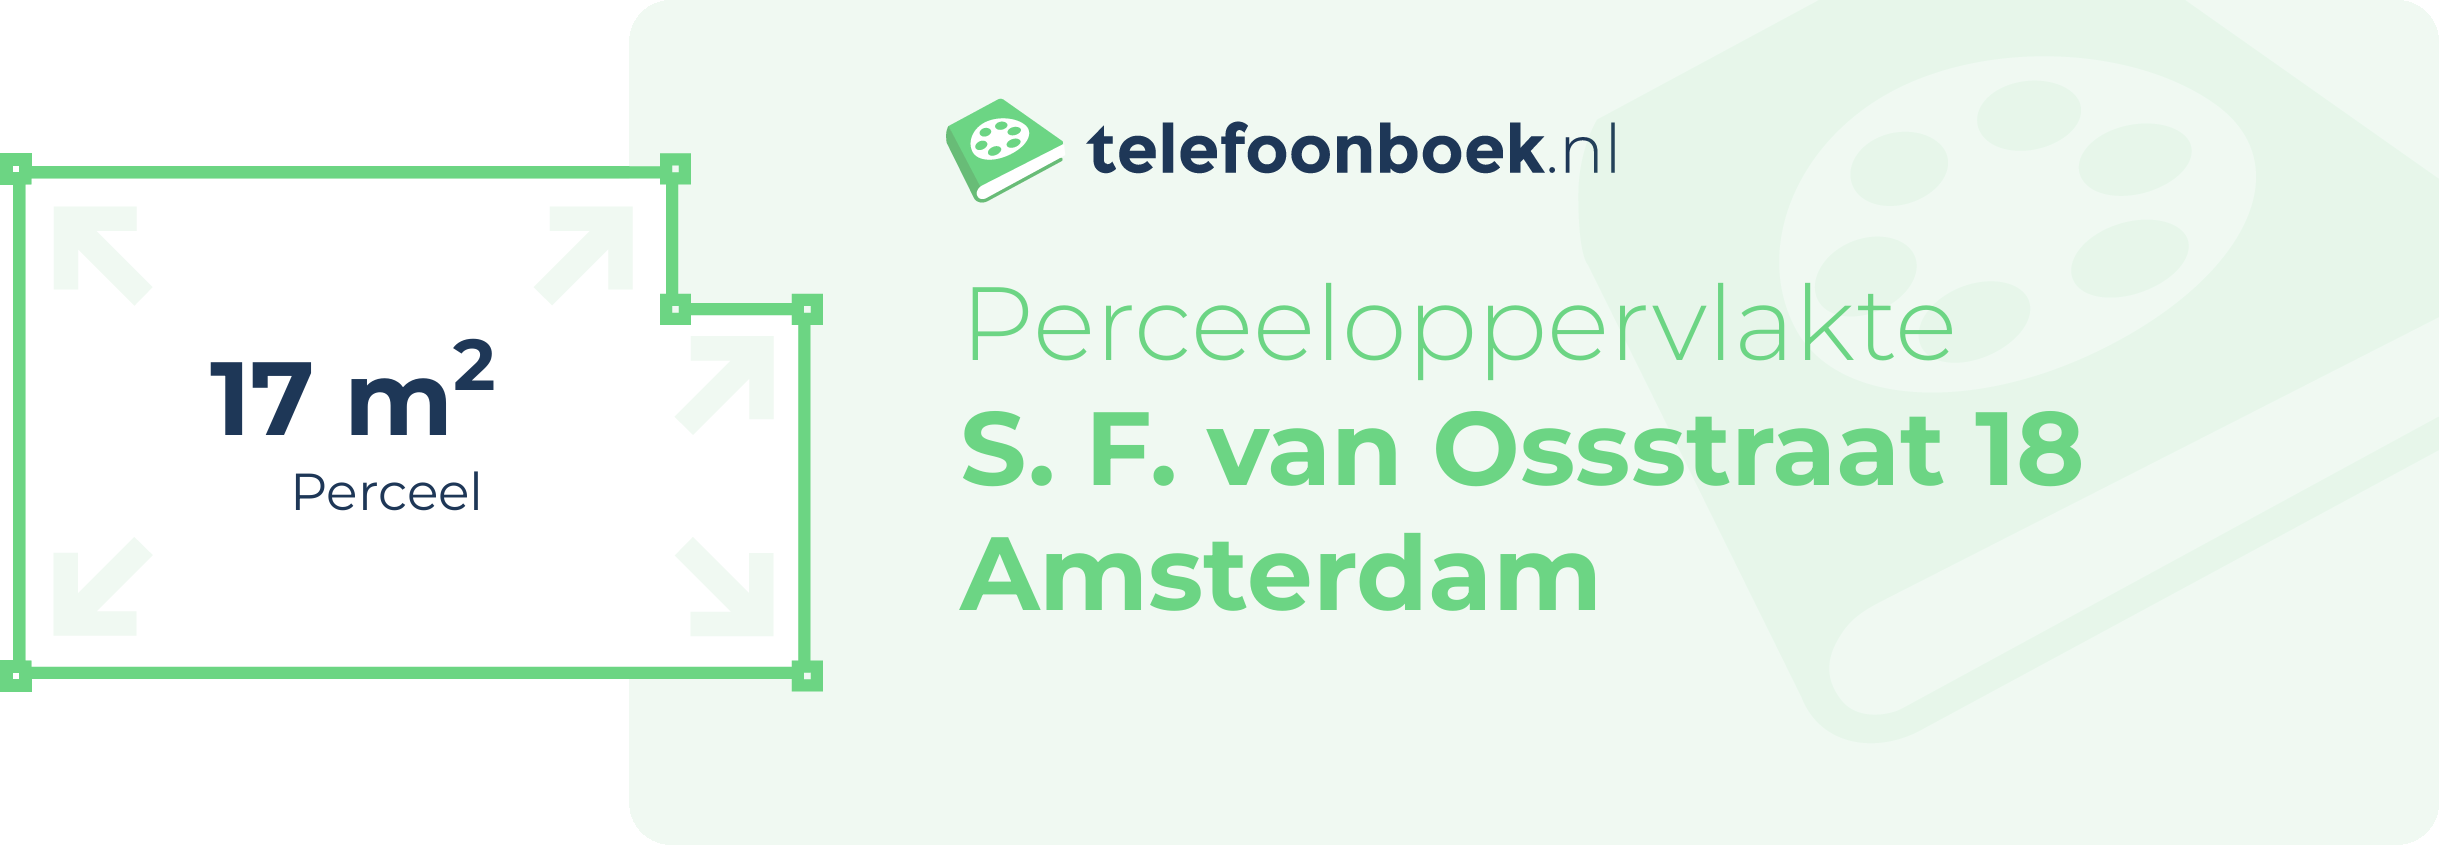 Perceeloppervlakte S. F. Van Ossstraat 18 Amsterdam